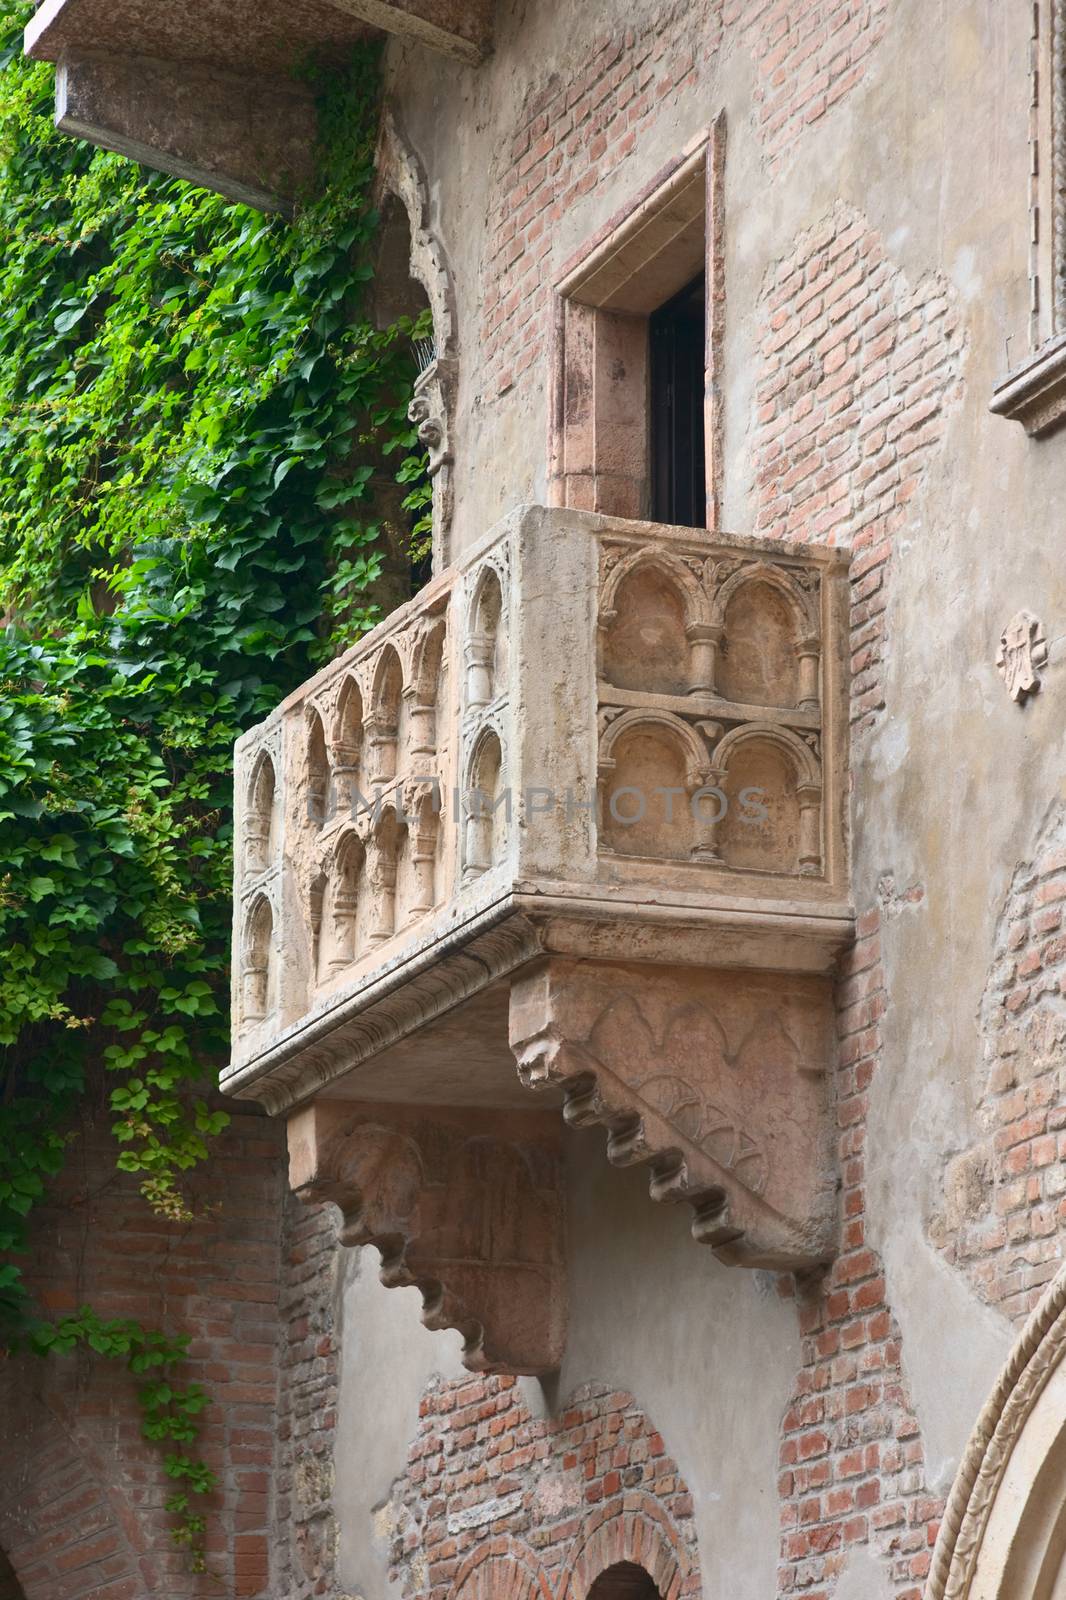 Romeo and Juliet balcony, Verona, Italy by vkstudio